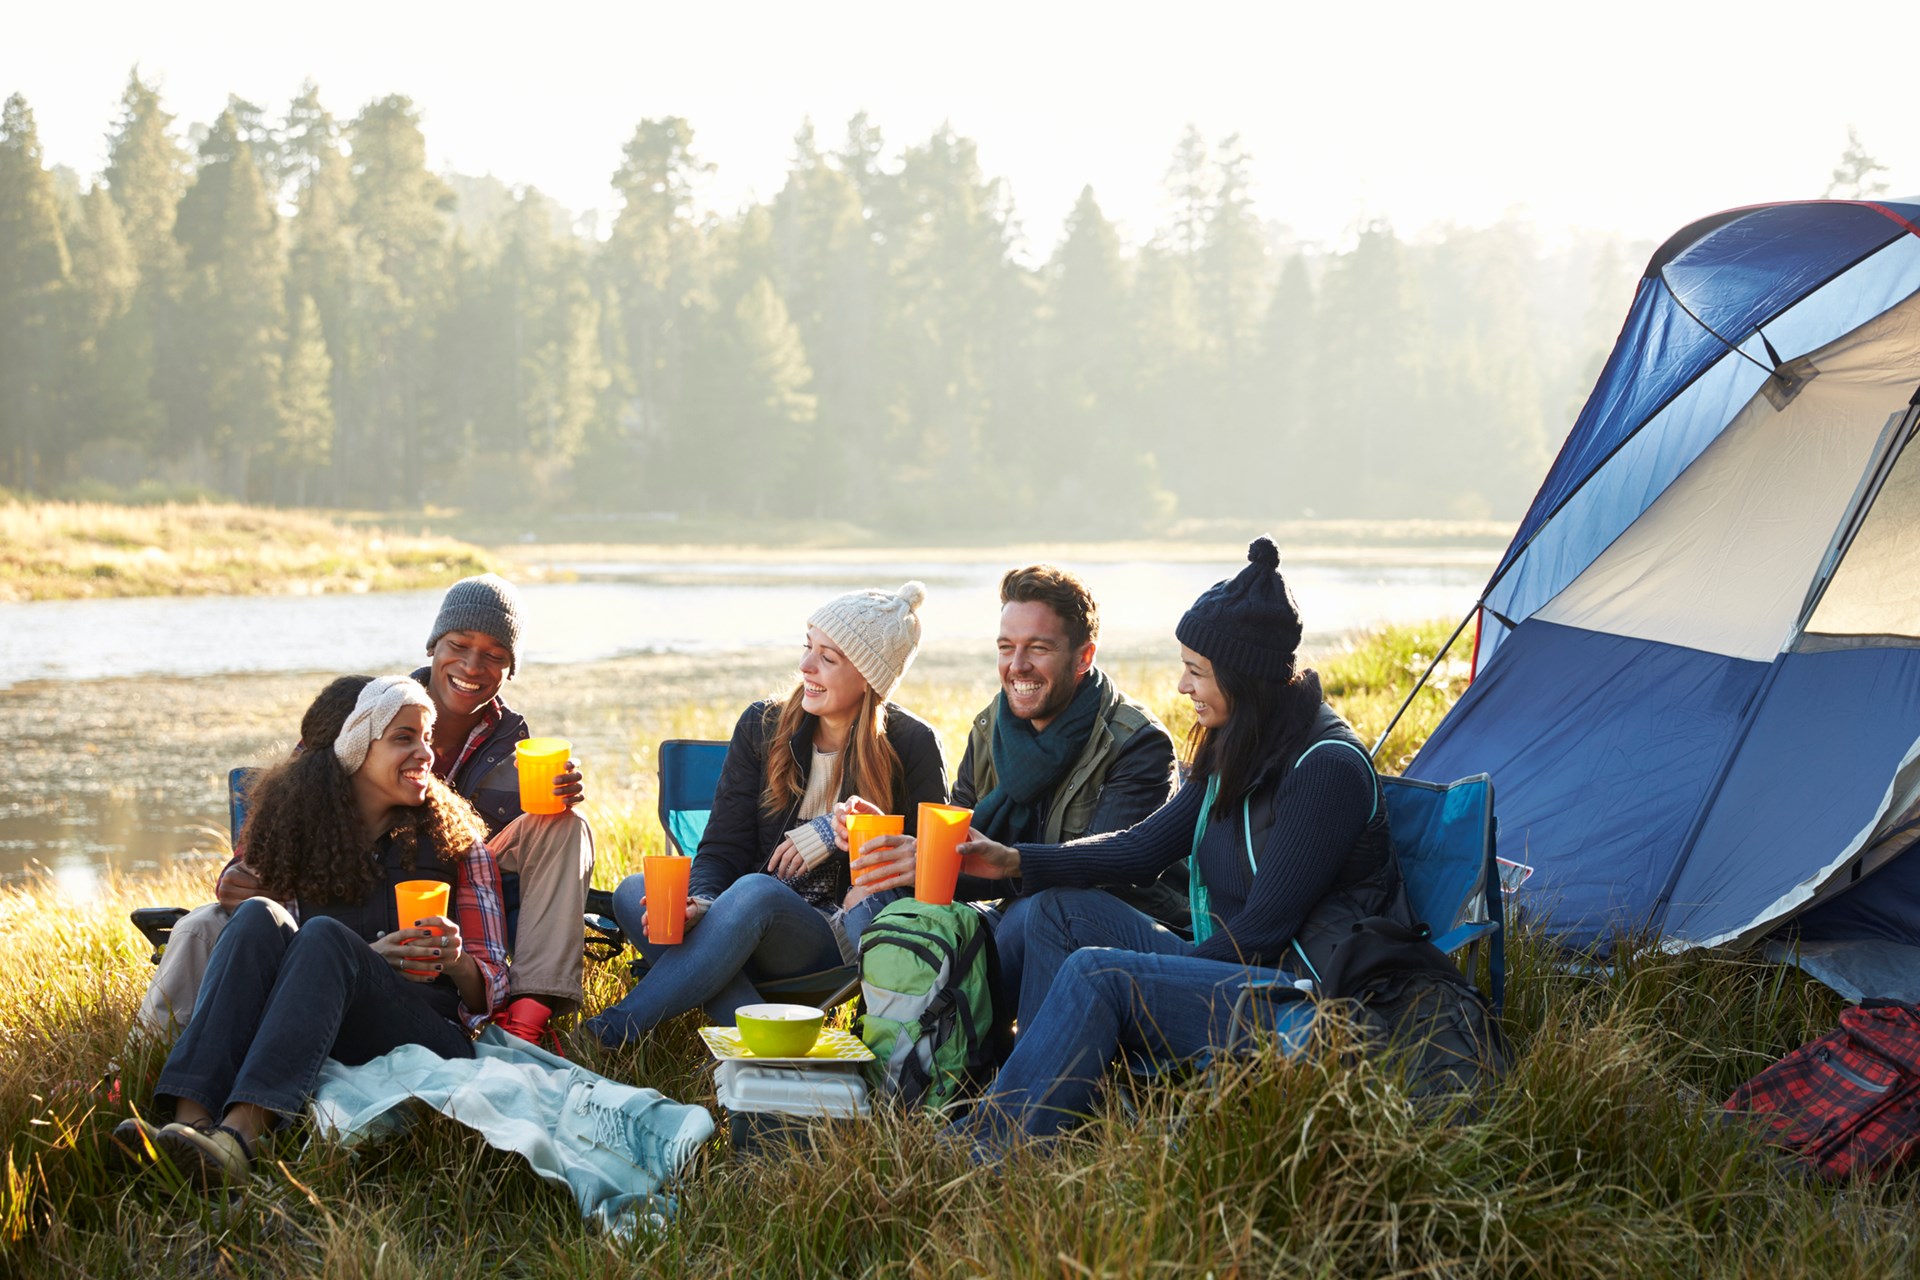 Du lịch dã ngoại, camping dần trở thành một xu hướng được nhiều người yêu thích